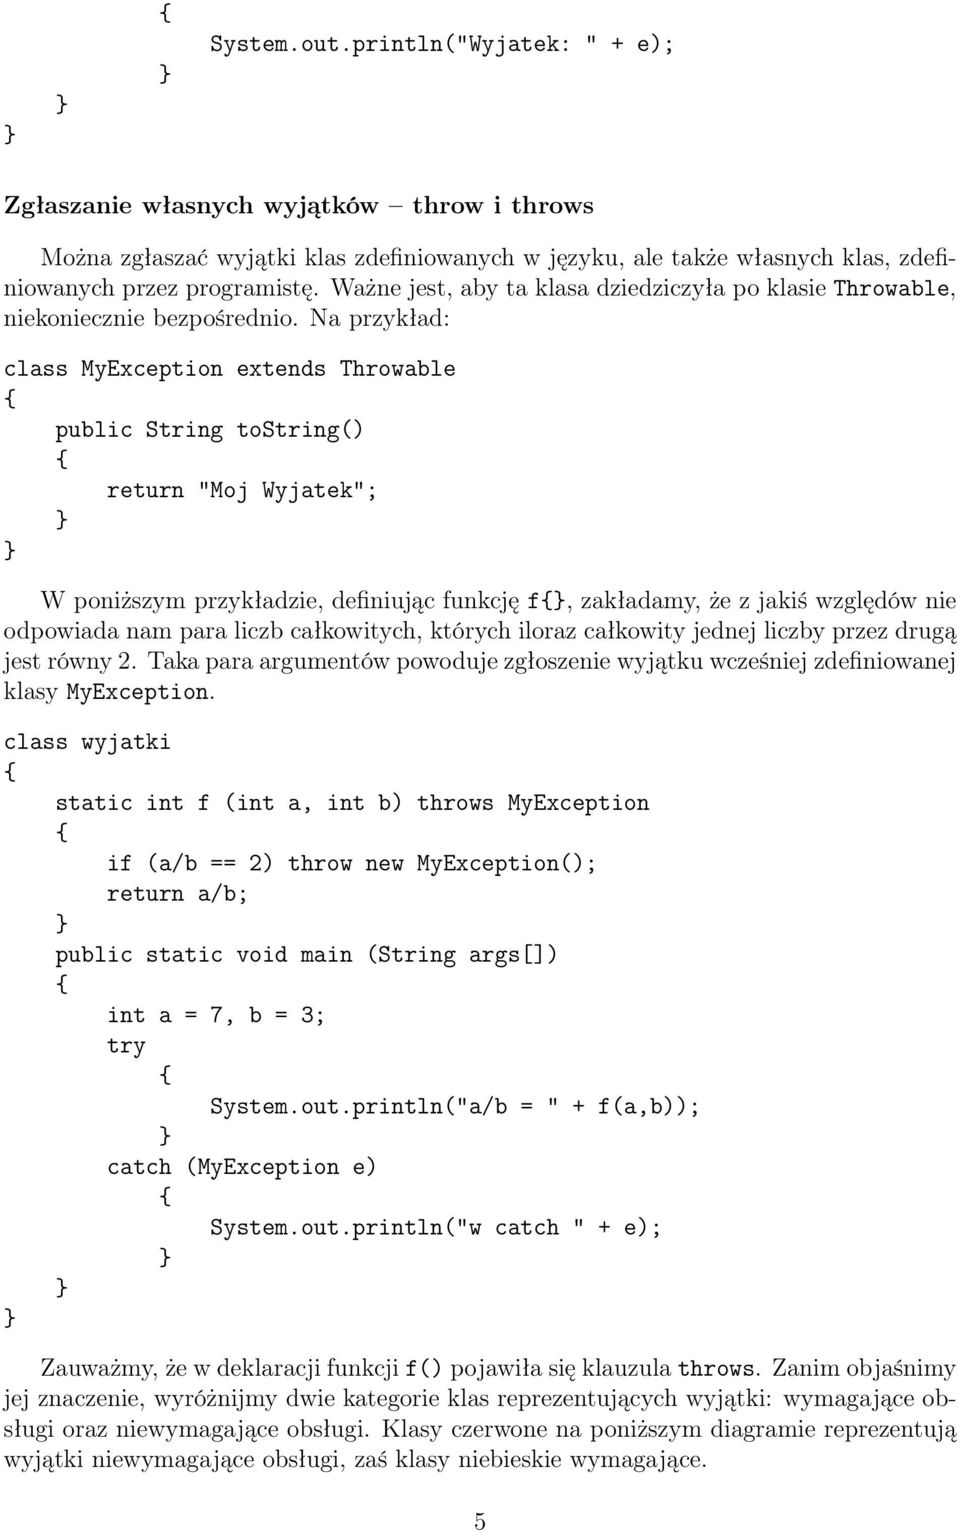 Na przykład: class MyException extends Throwable public String tostring() return "Moj Wyjatek"; W poniższym przykładzie, definiując funkcję f, zakładamy, że z jakiś względów nie odpowiada nam para